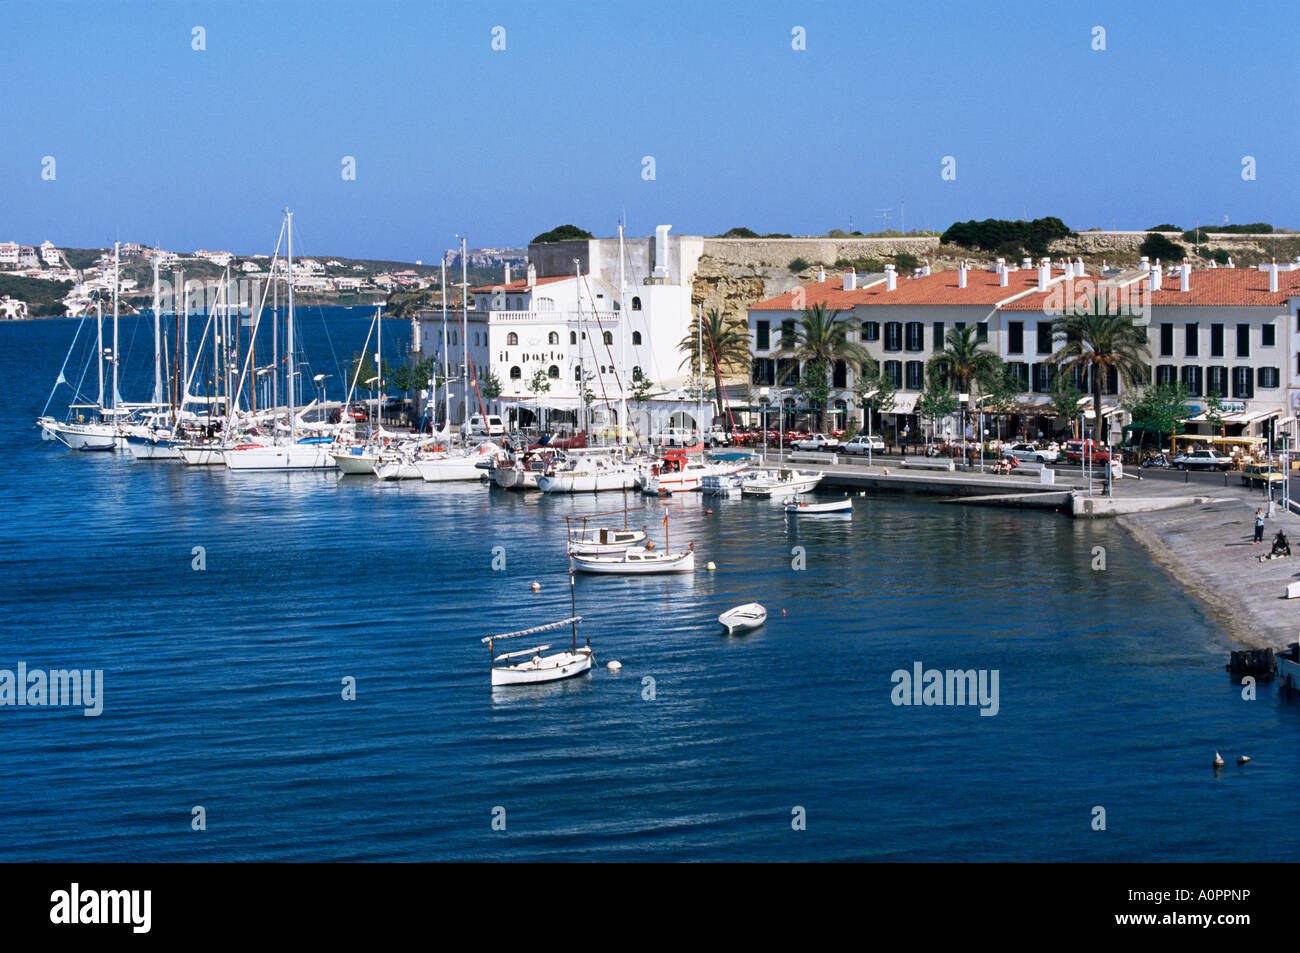 El puerto y el puerto de yates en Mahón Menorca Islas Baleares España Europa Mediterránea Foto de stock